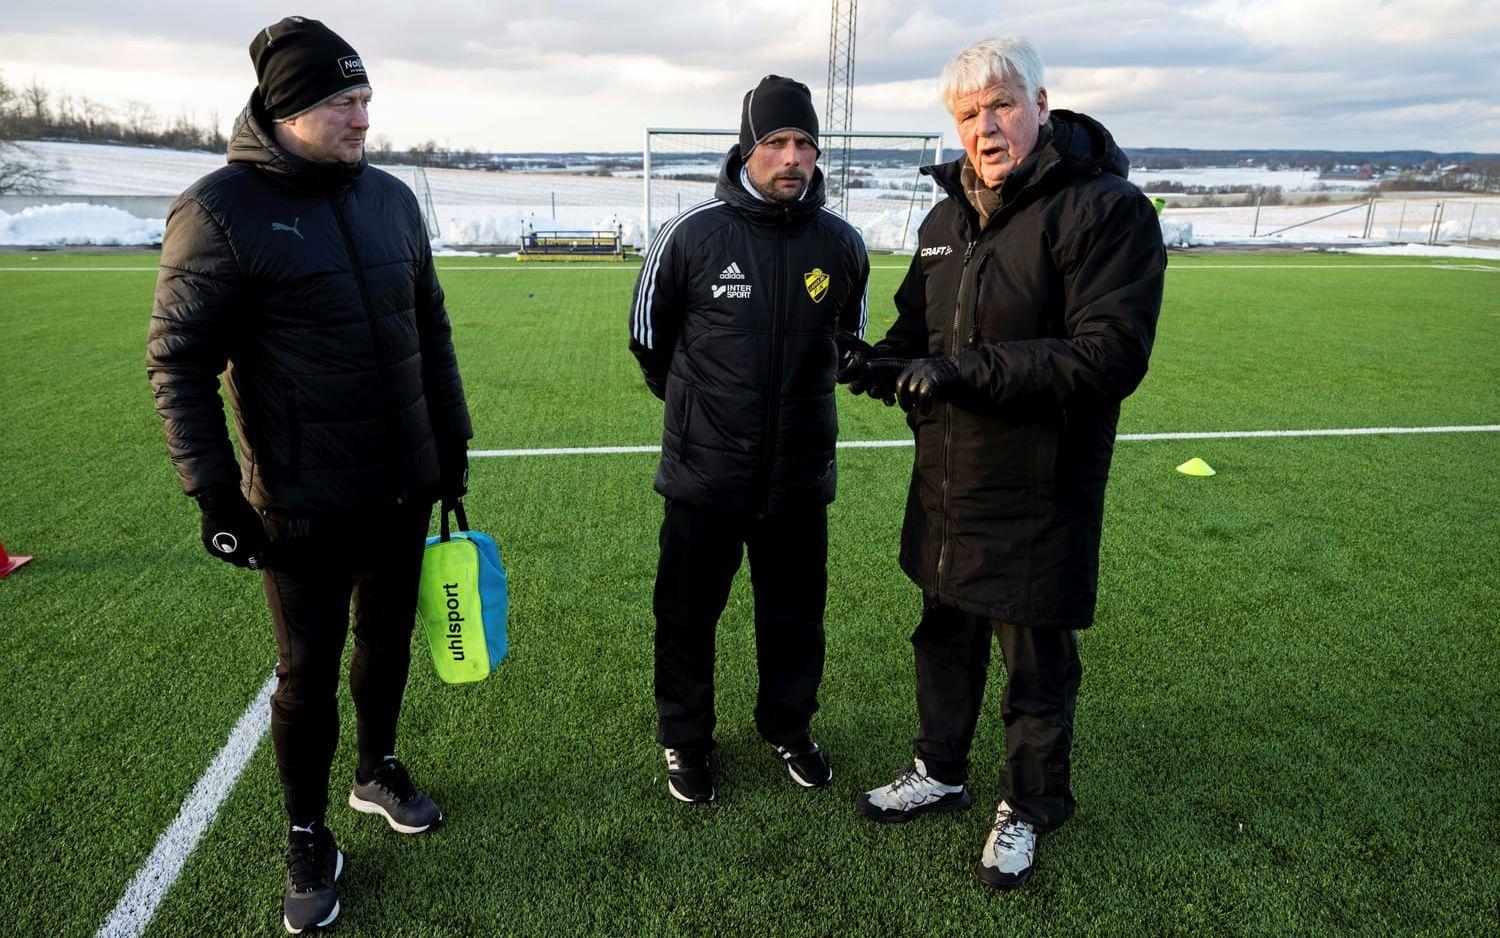 Jonas Axeldal backas upp av ett erfaret tränarteam i Laholm med Joakim Wulff (till vänster) som målvaktstränare och Kalle Björklund (till höger) som assisterande tränare ihop med Andreas Hedström (ej på bild).